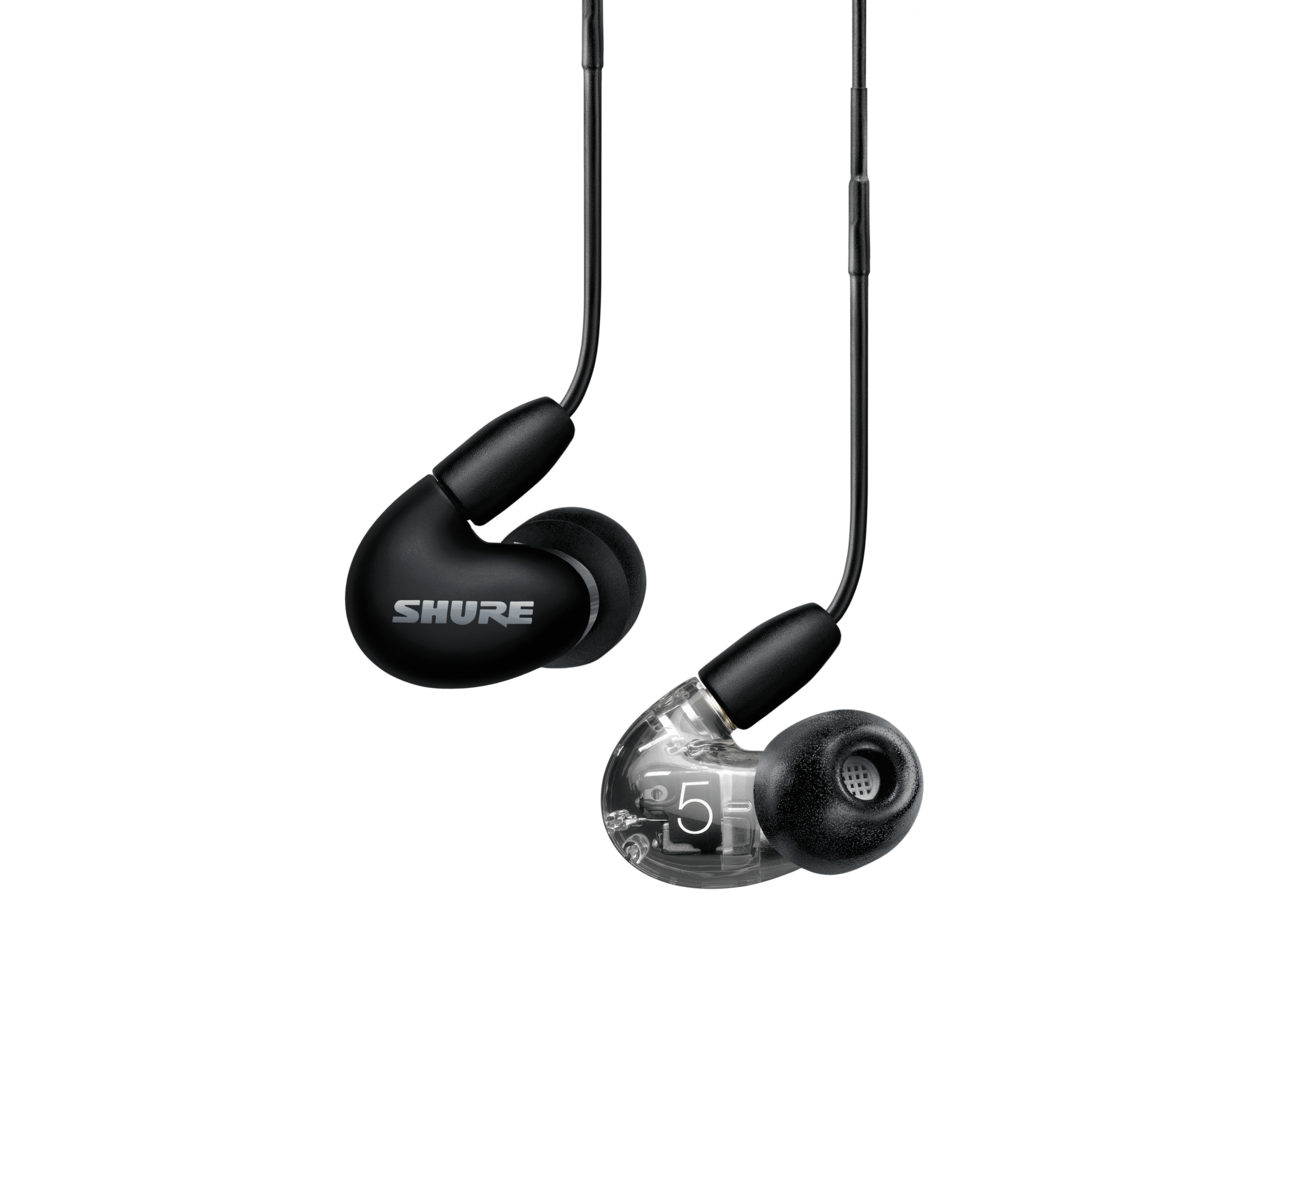 Shure Aonic 5 - Auriculares profesionales con control remoto y micrófono